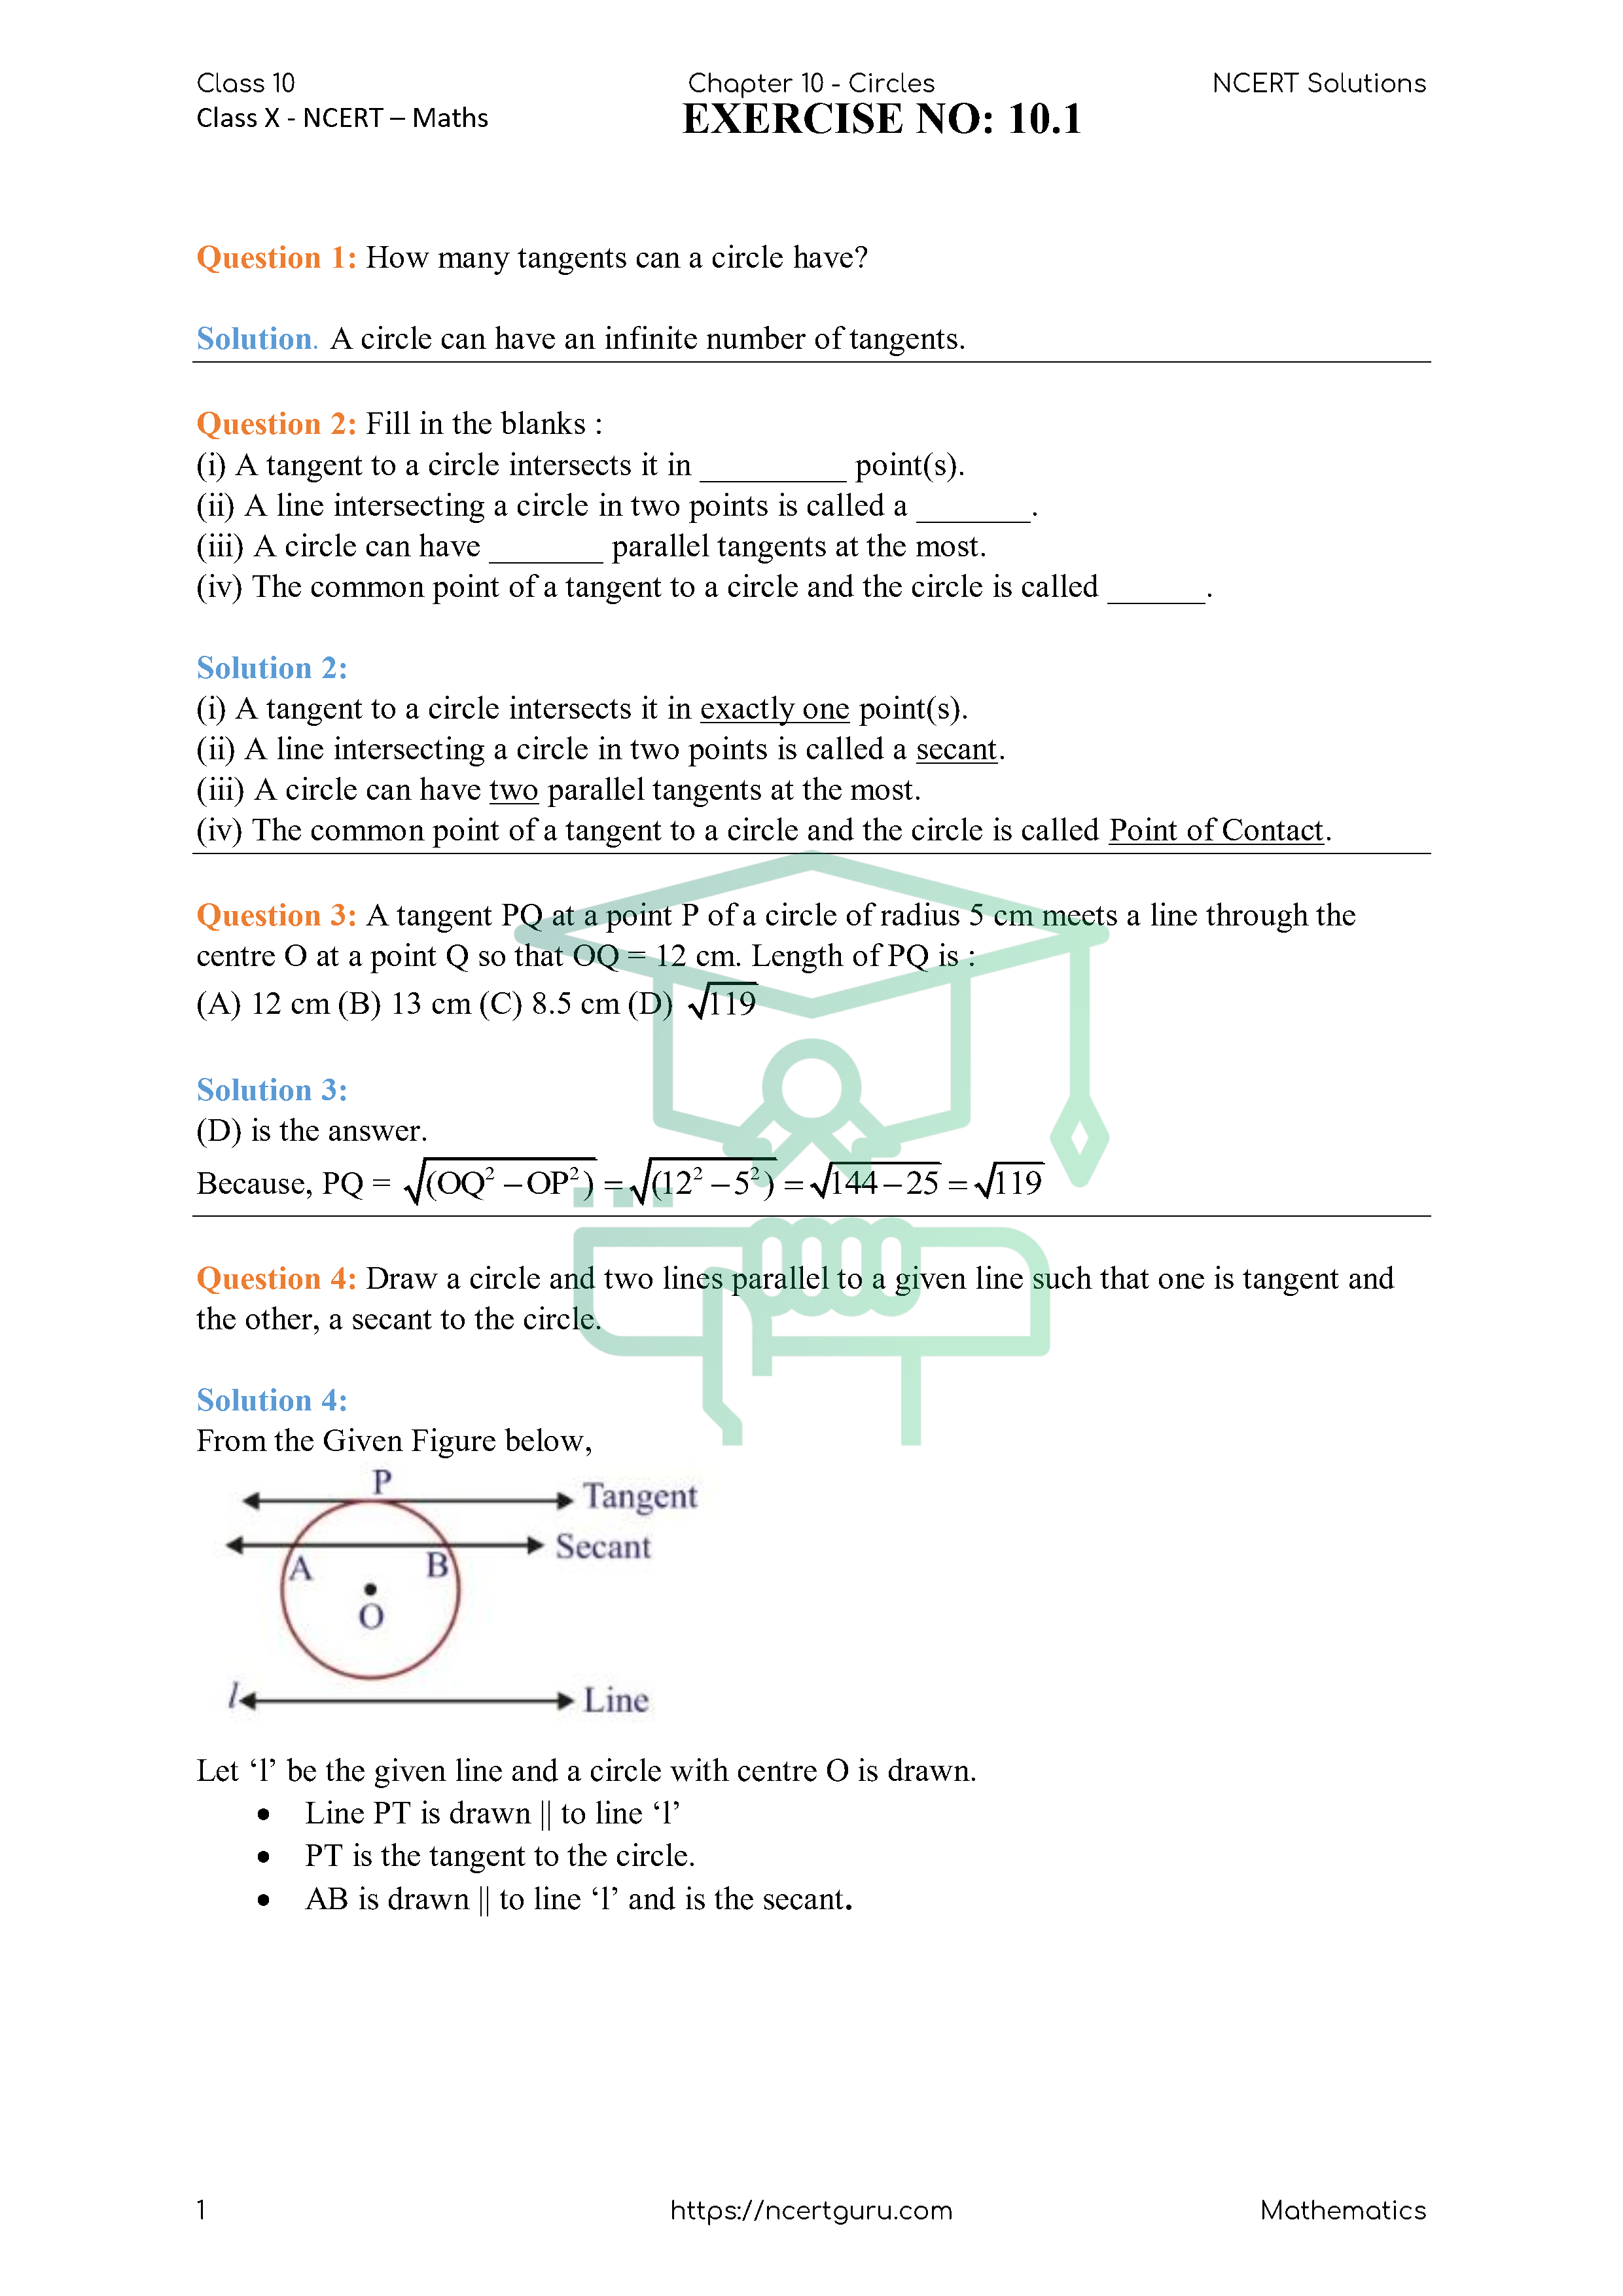 NCERT Solutions for Class 10 Maths Chapter 10